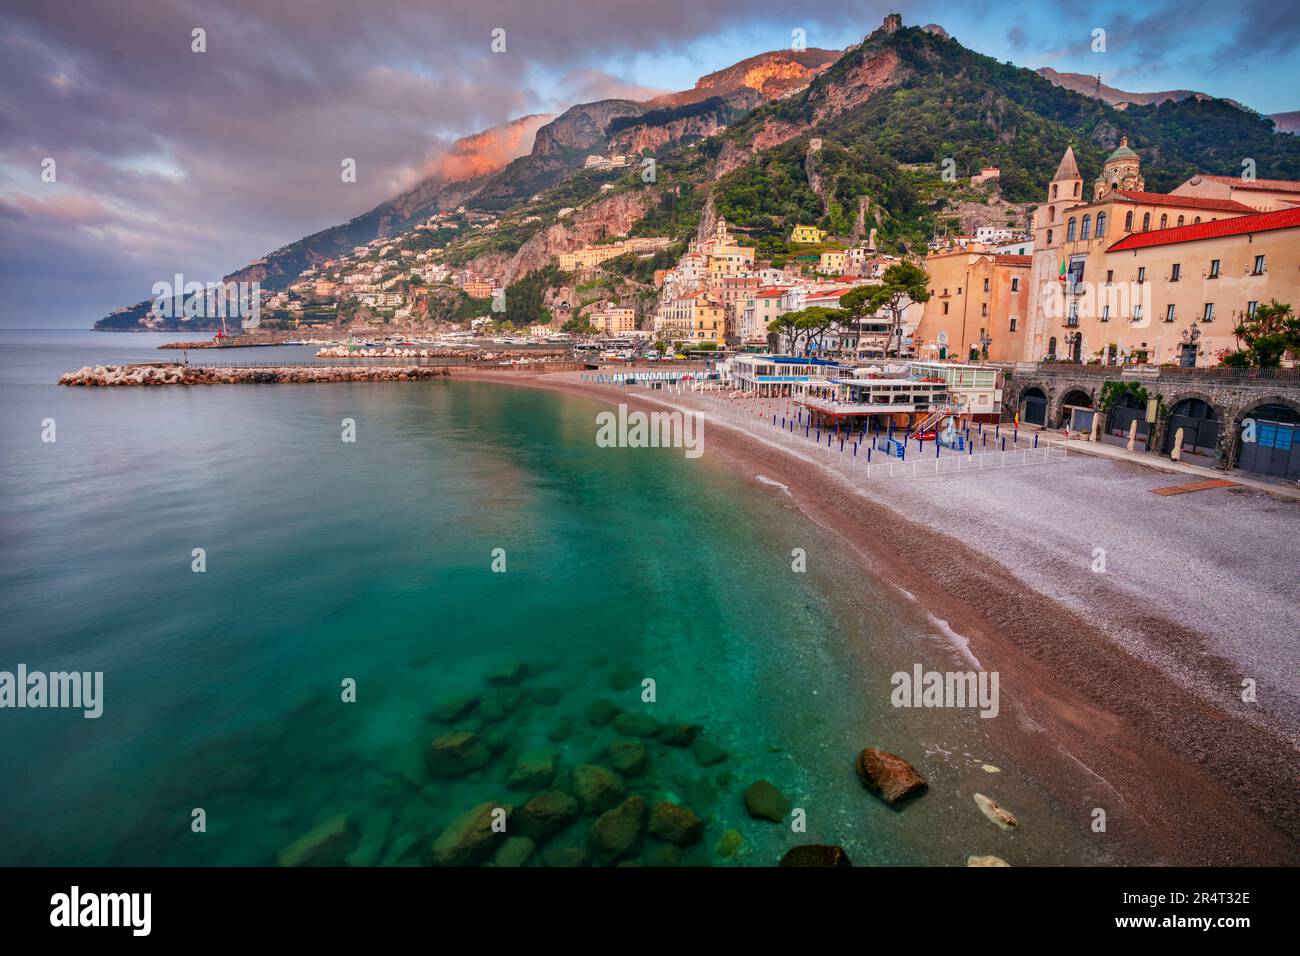 Amalfi, Italien. Stadtbild der berühmten Küstenstadt Amalfi, gelegen an der Amalfiküste, Italien bei Sonnenaufgang. Stockfoto